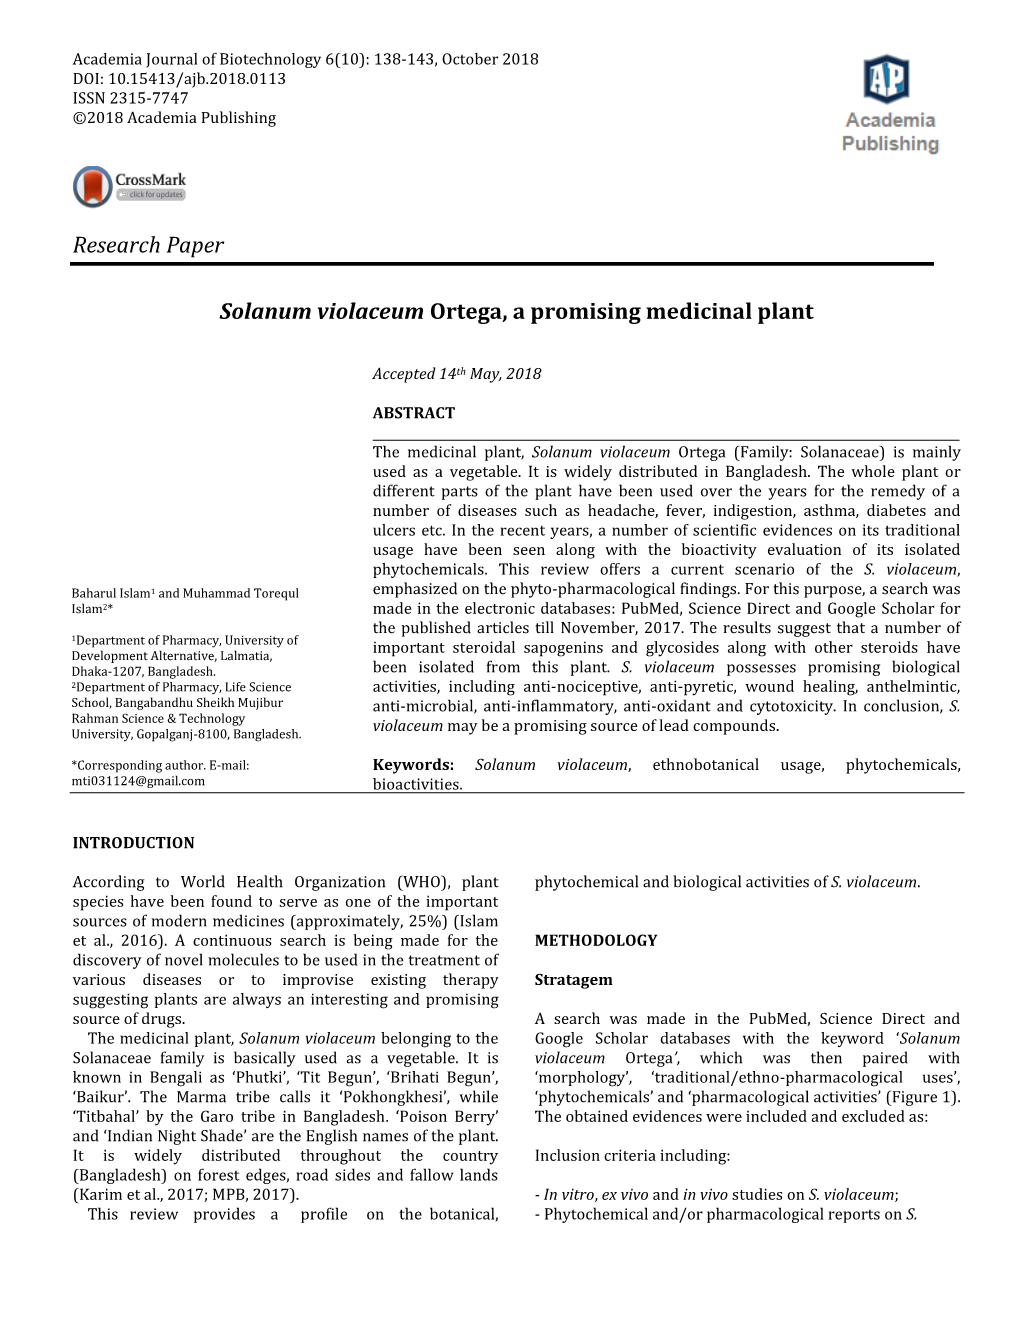 Research Paper Solanum Violaceum Ortega, a Promising Medicinal Plant